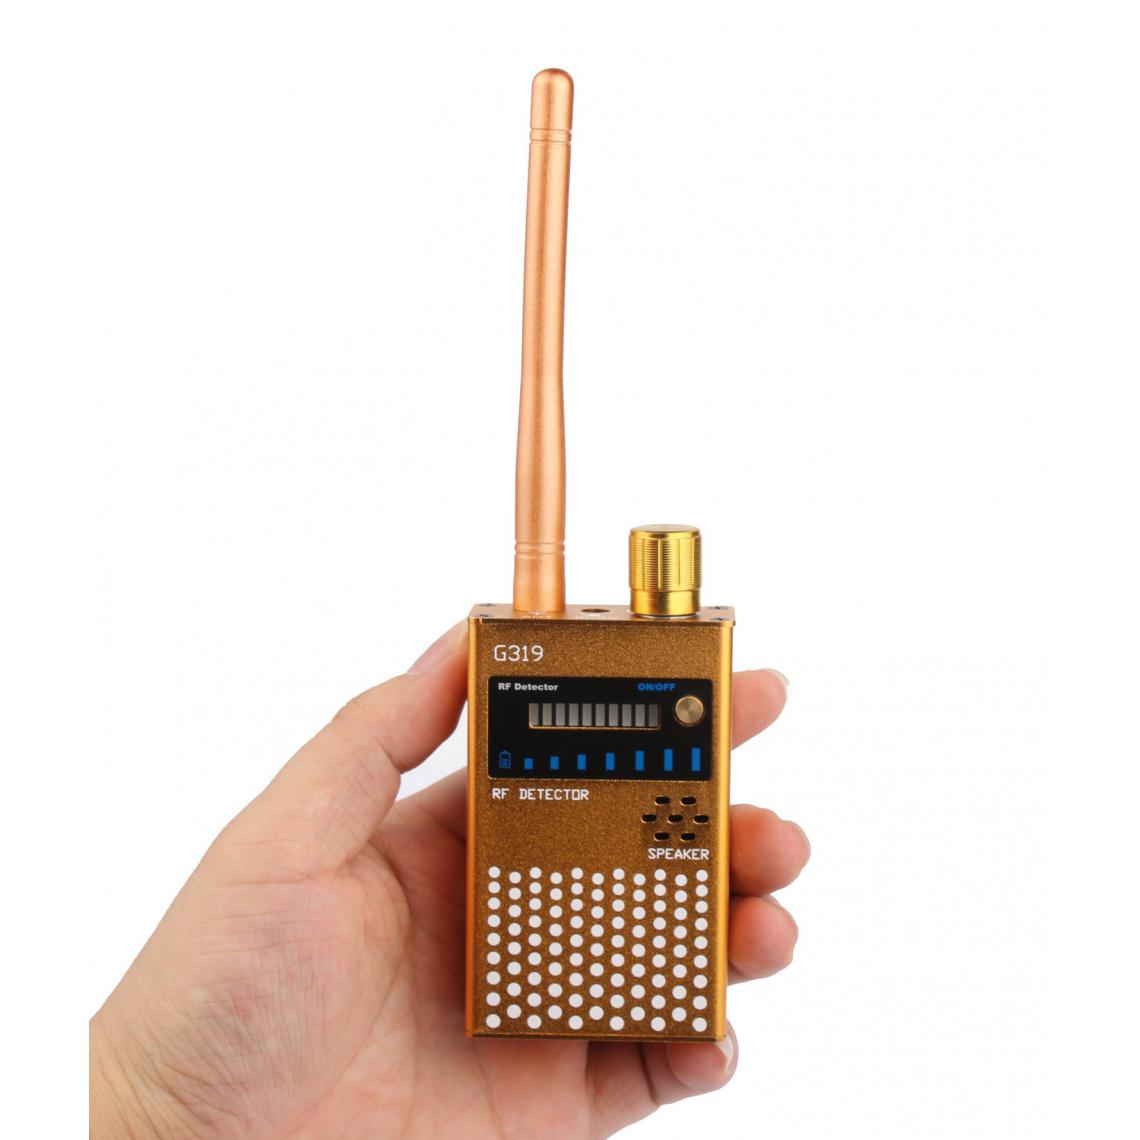 Chrono - Détecteur de Signal RF,Détecteur de fréquences de 1 MHz à 8 000 MHz pour détecter Les caméras d'espionnage, Les dispositifs d'écoute indiscrets, Le traqueur GPSï¼noirï¼ - Autres accessoires smartphone